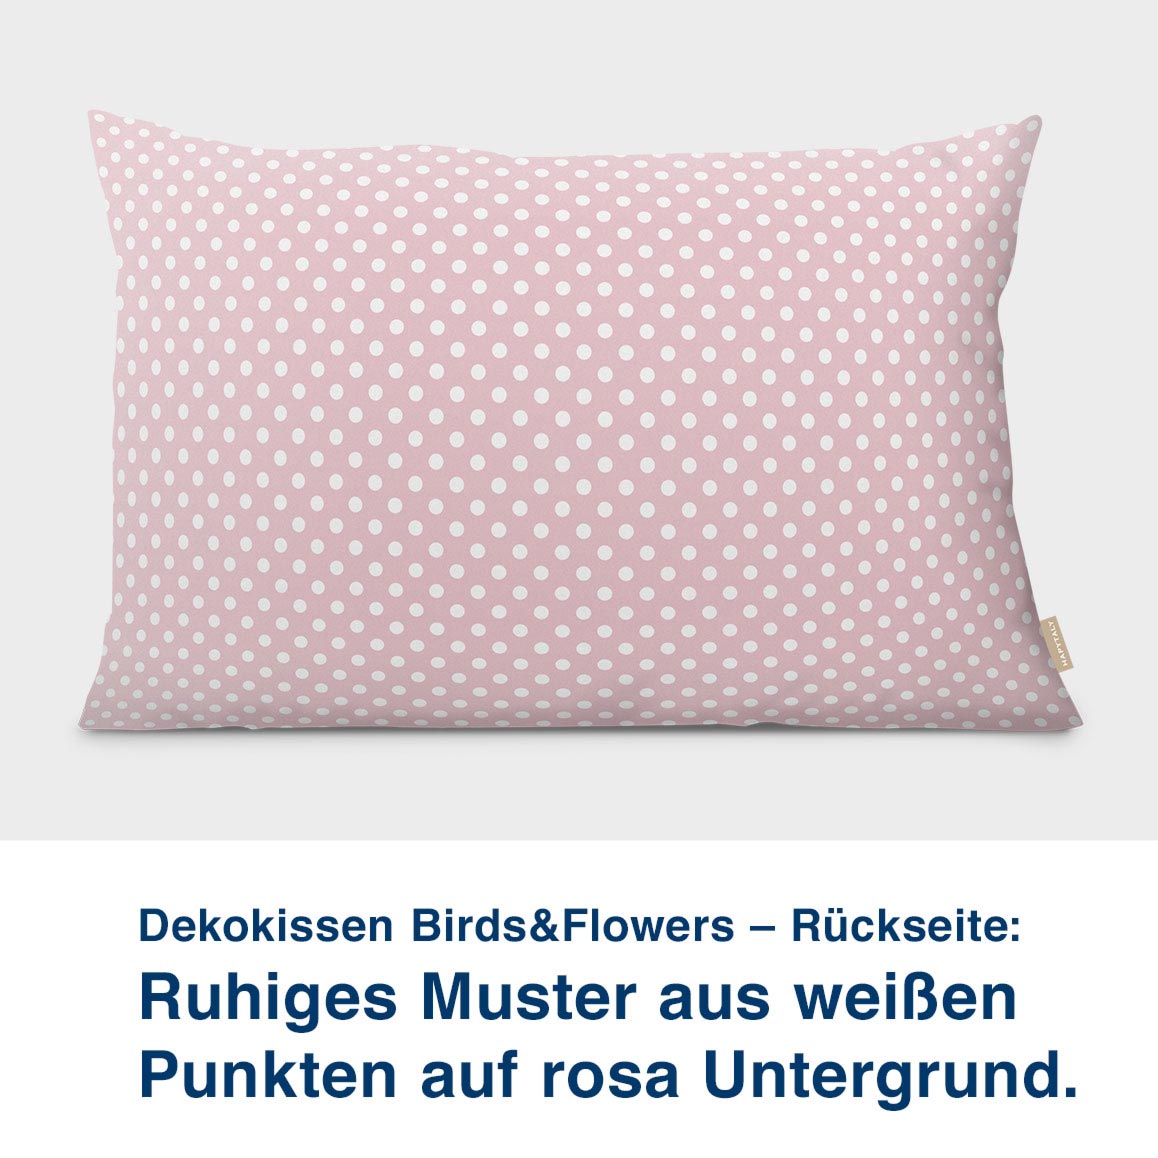 Dekokissen Birds&Flowers – Rückseite:  Ruhiges Muster aus weißen  Punkten auf rosa Untergrund. UNtergrund die Farben des Meeres.